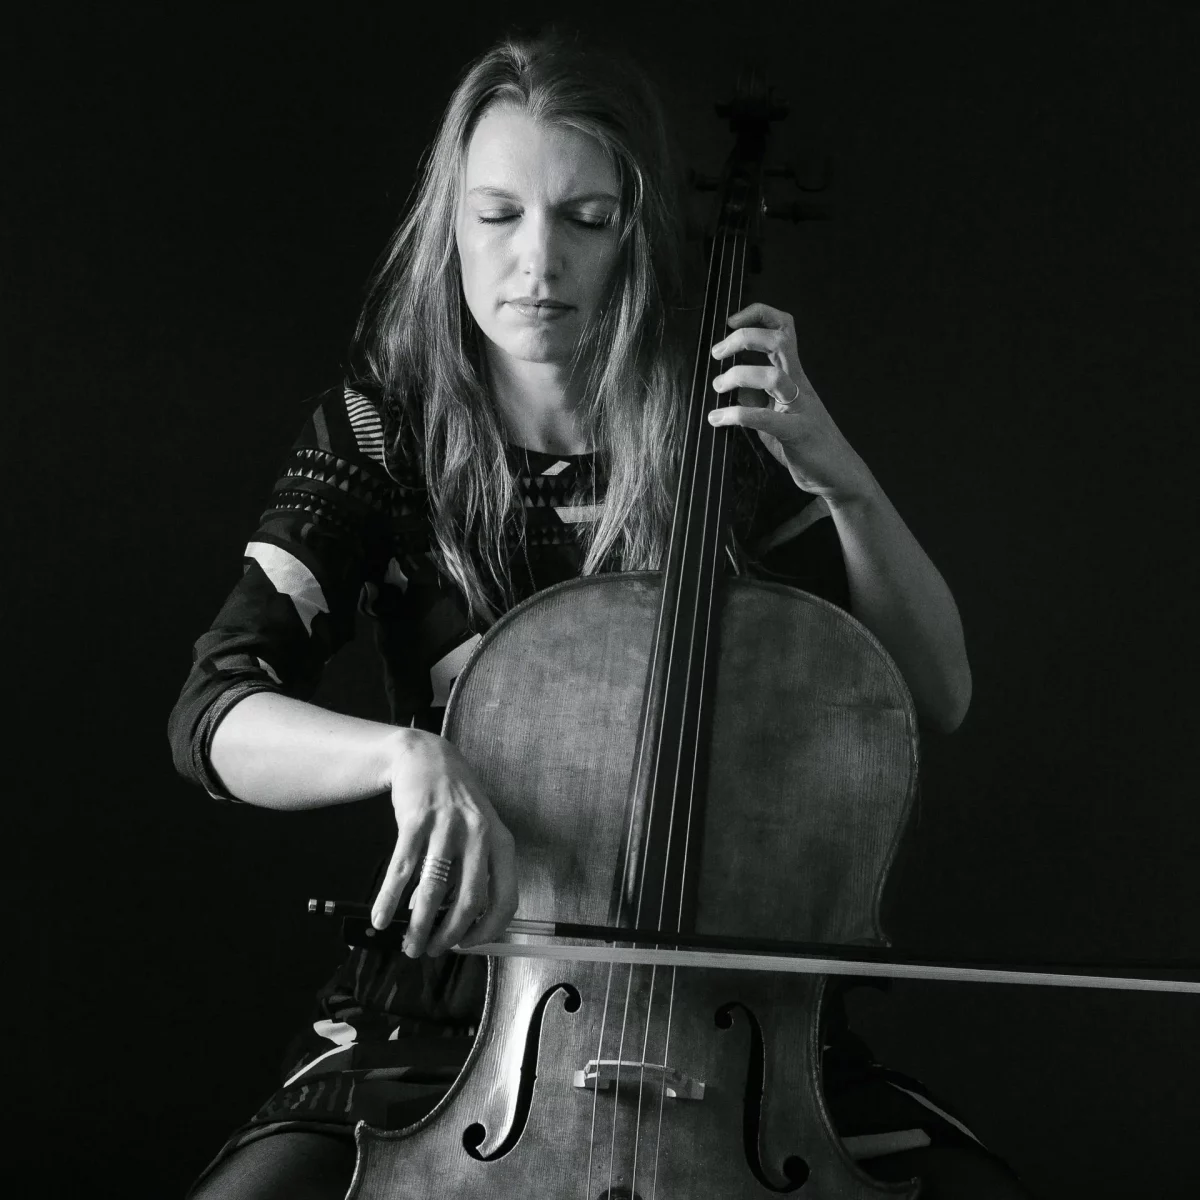 metier-passion-violoncelliste-agnes-colombo-9